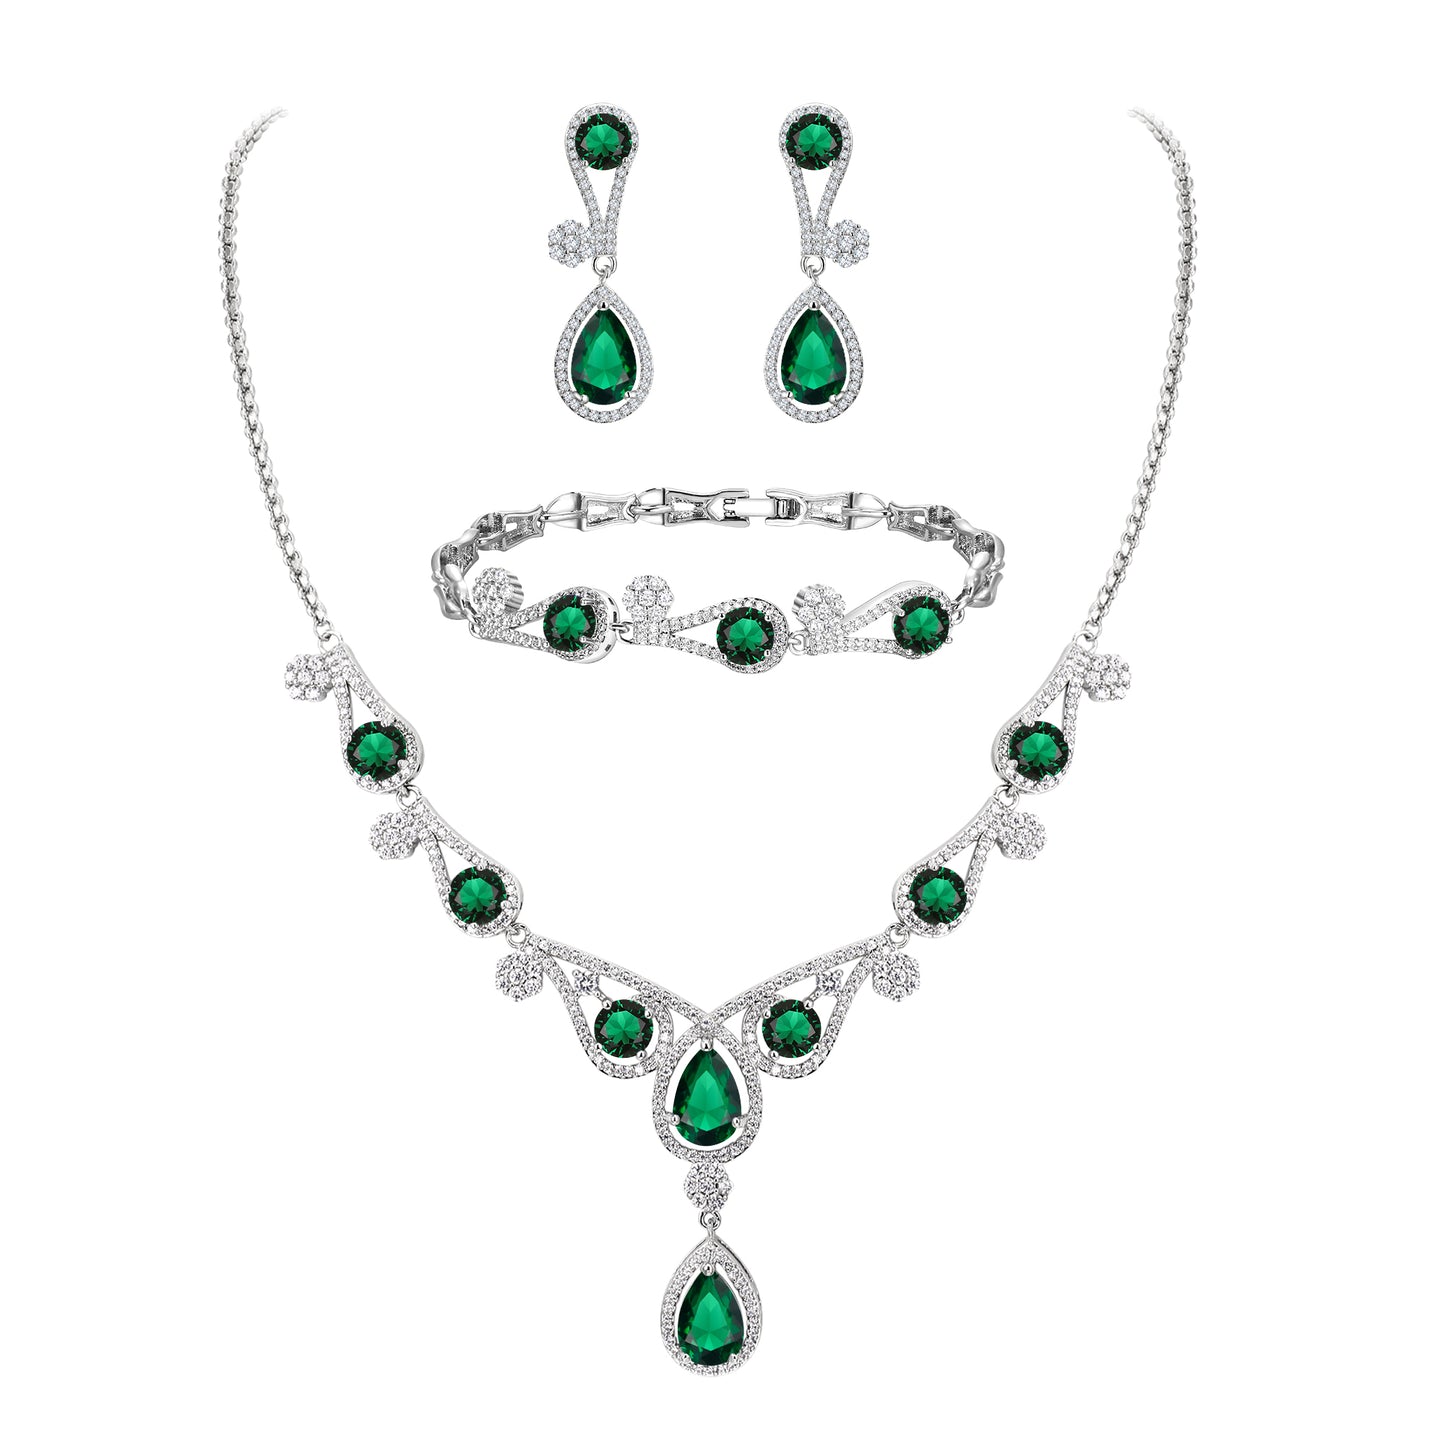 08311 Gorgeous CZ Lots Hollow-Out Teardrop Necklace Earrings Bracelet Jewelry Set